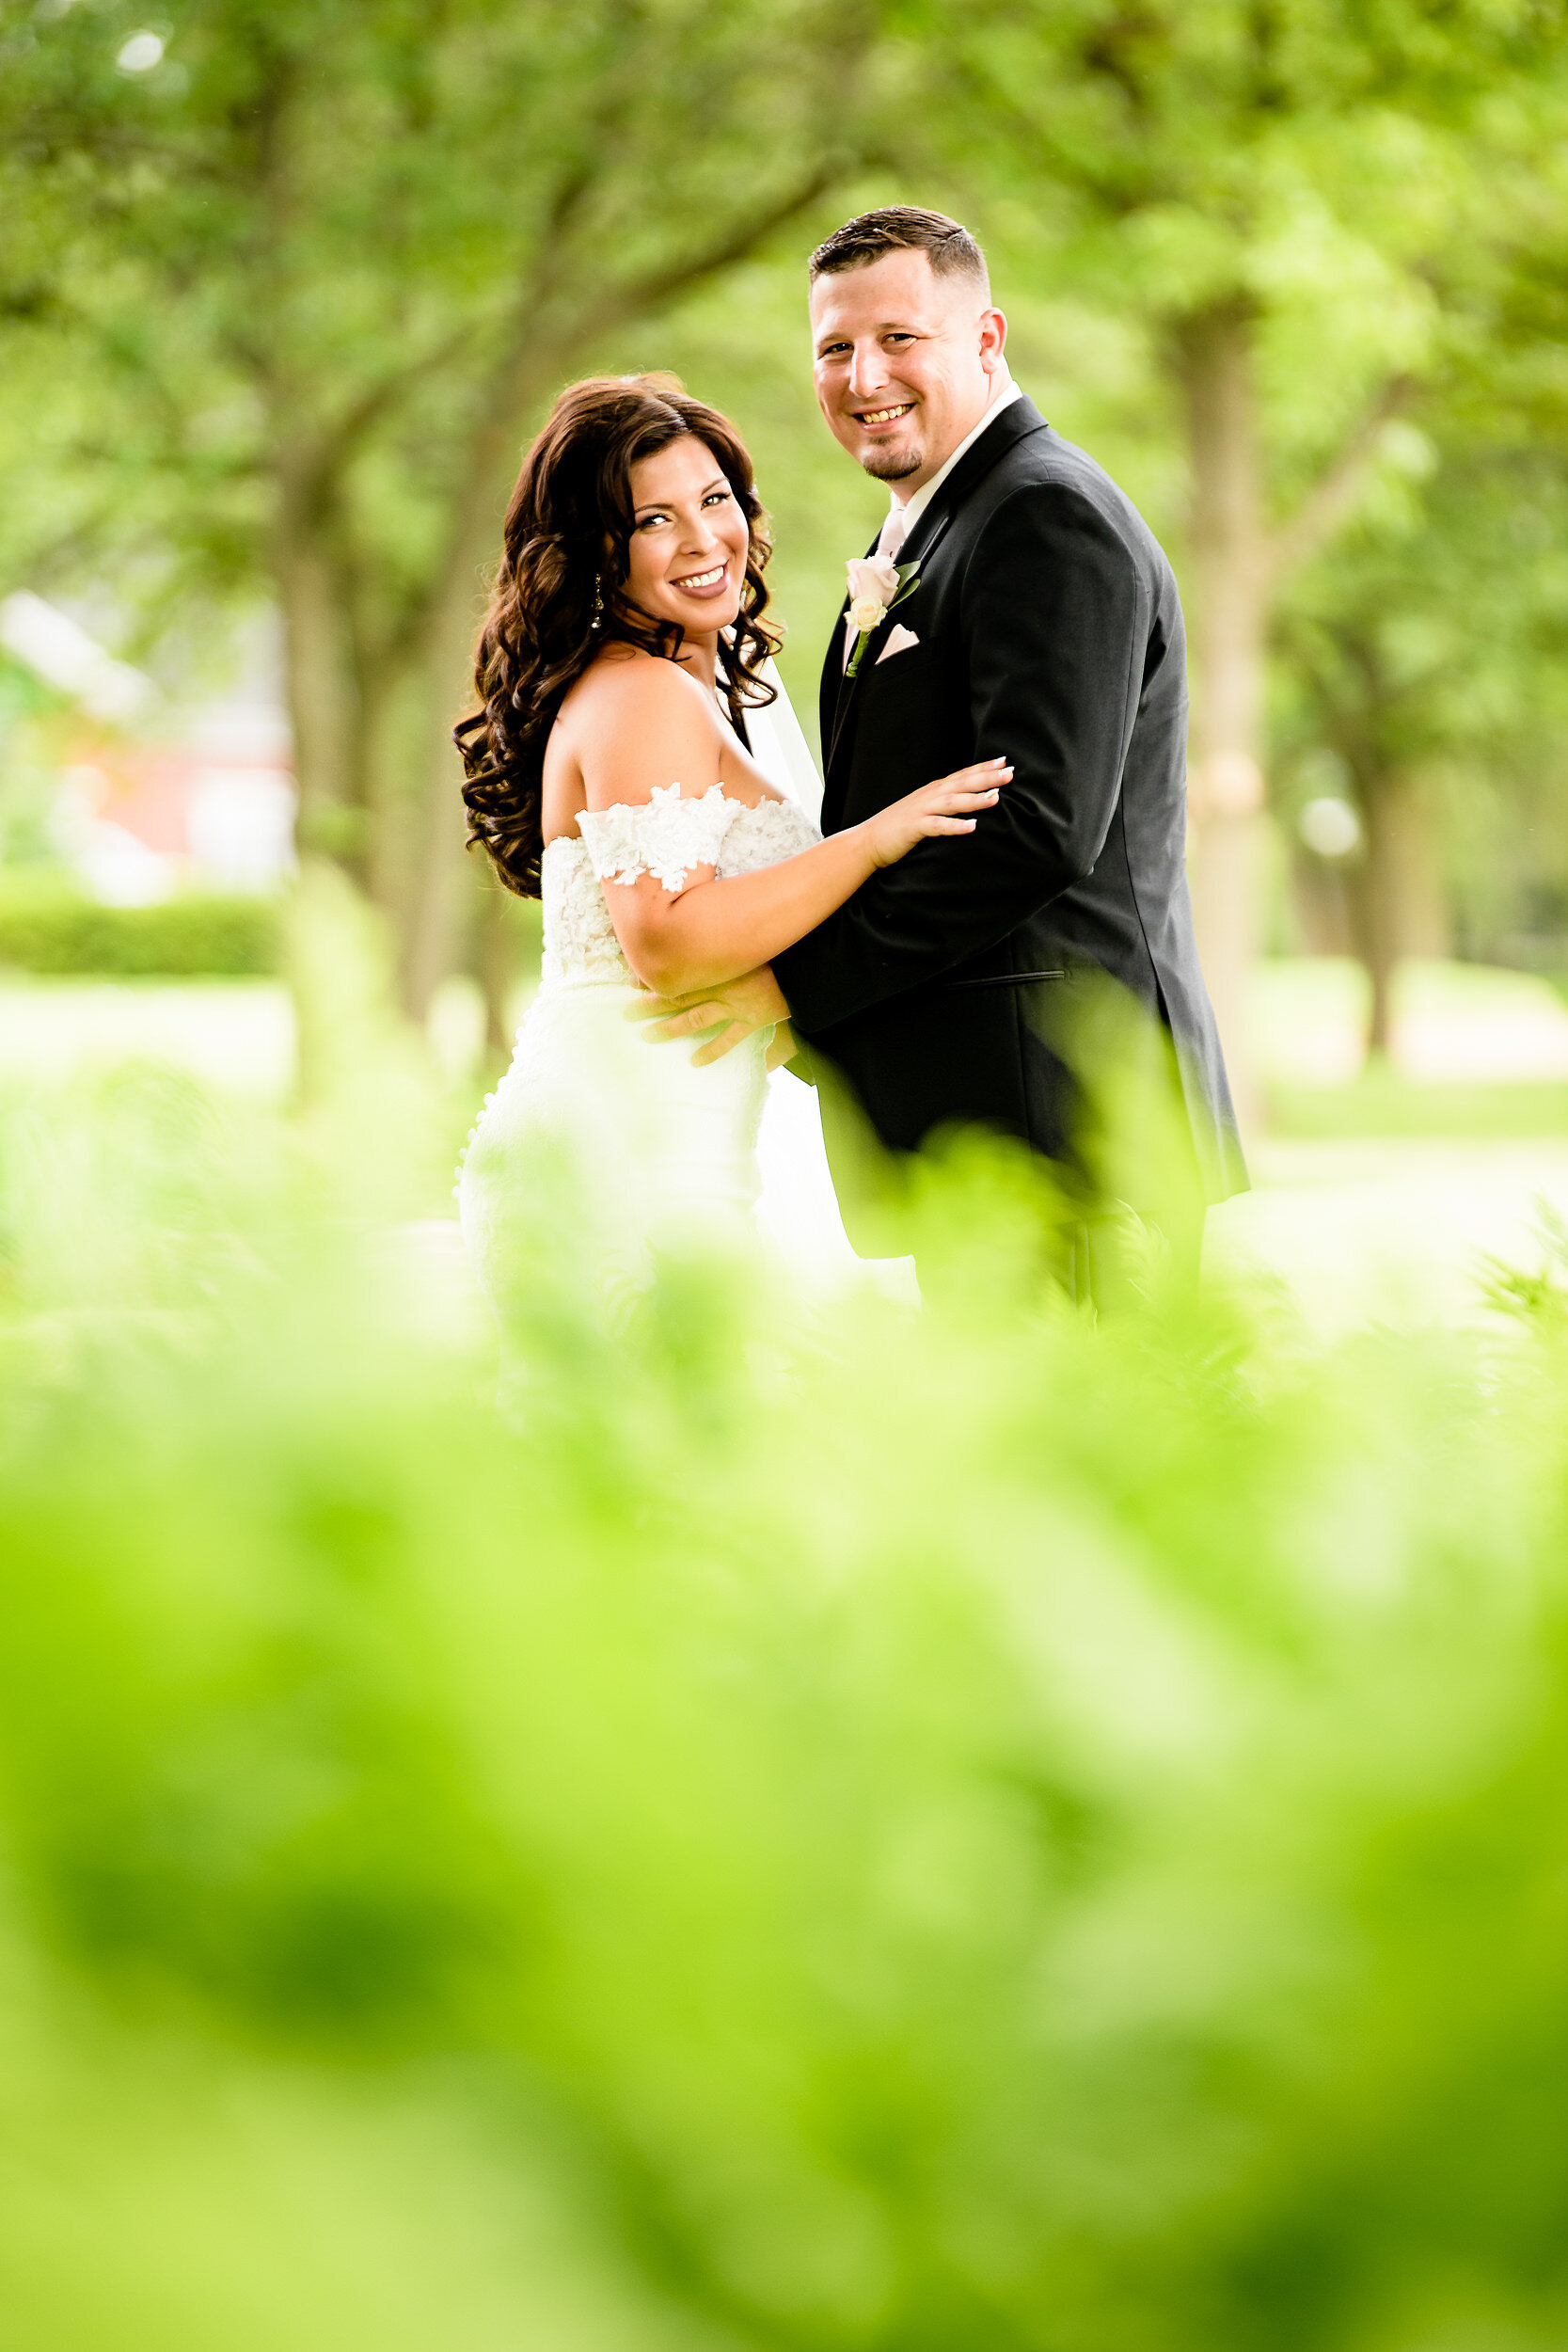 Briar Ridge Country Club Wedding Venue - Northwest Indiana Wedding Photographer Region Weddings